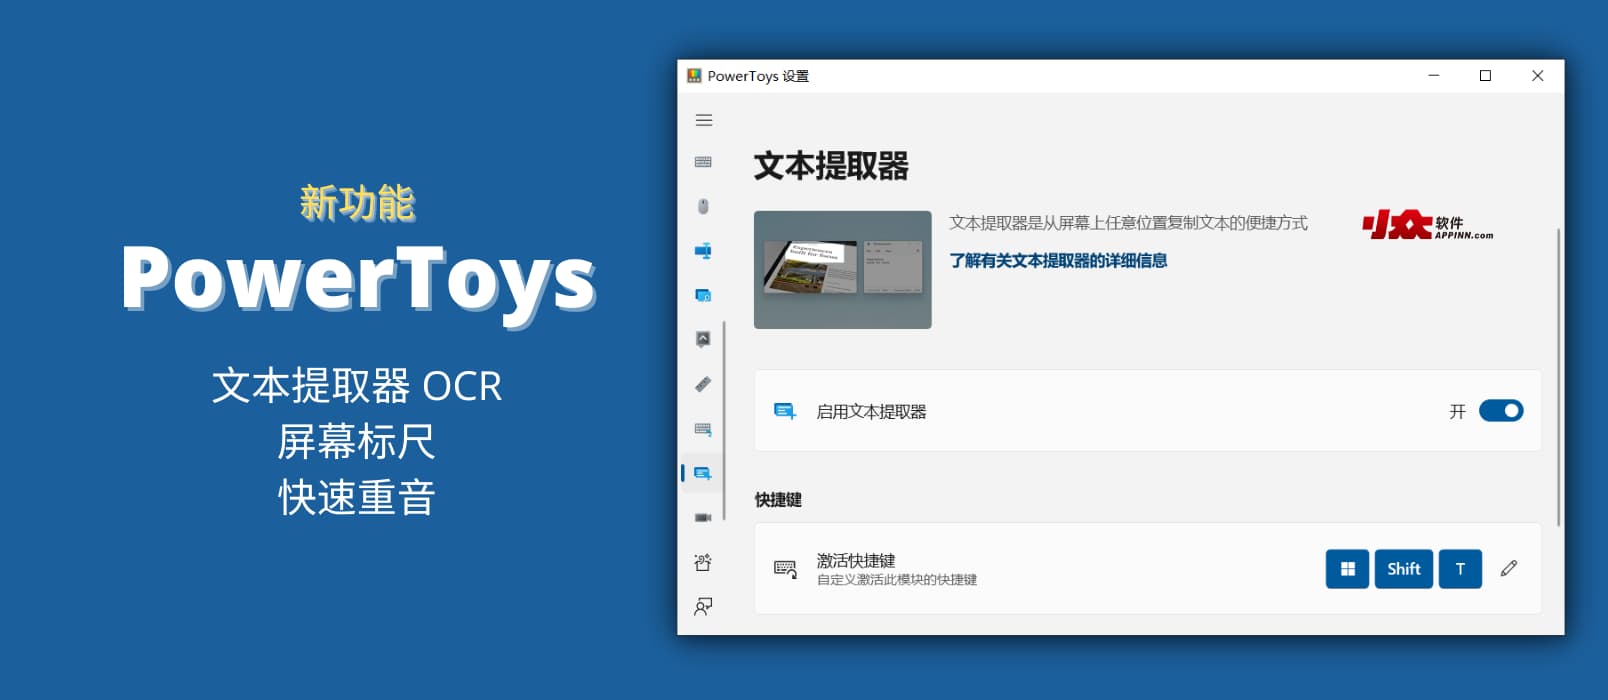 微软官方超实用 15+ 小工具集 PowerToys v0.62.0 发布，新增文本提取器 OCR 功能